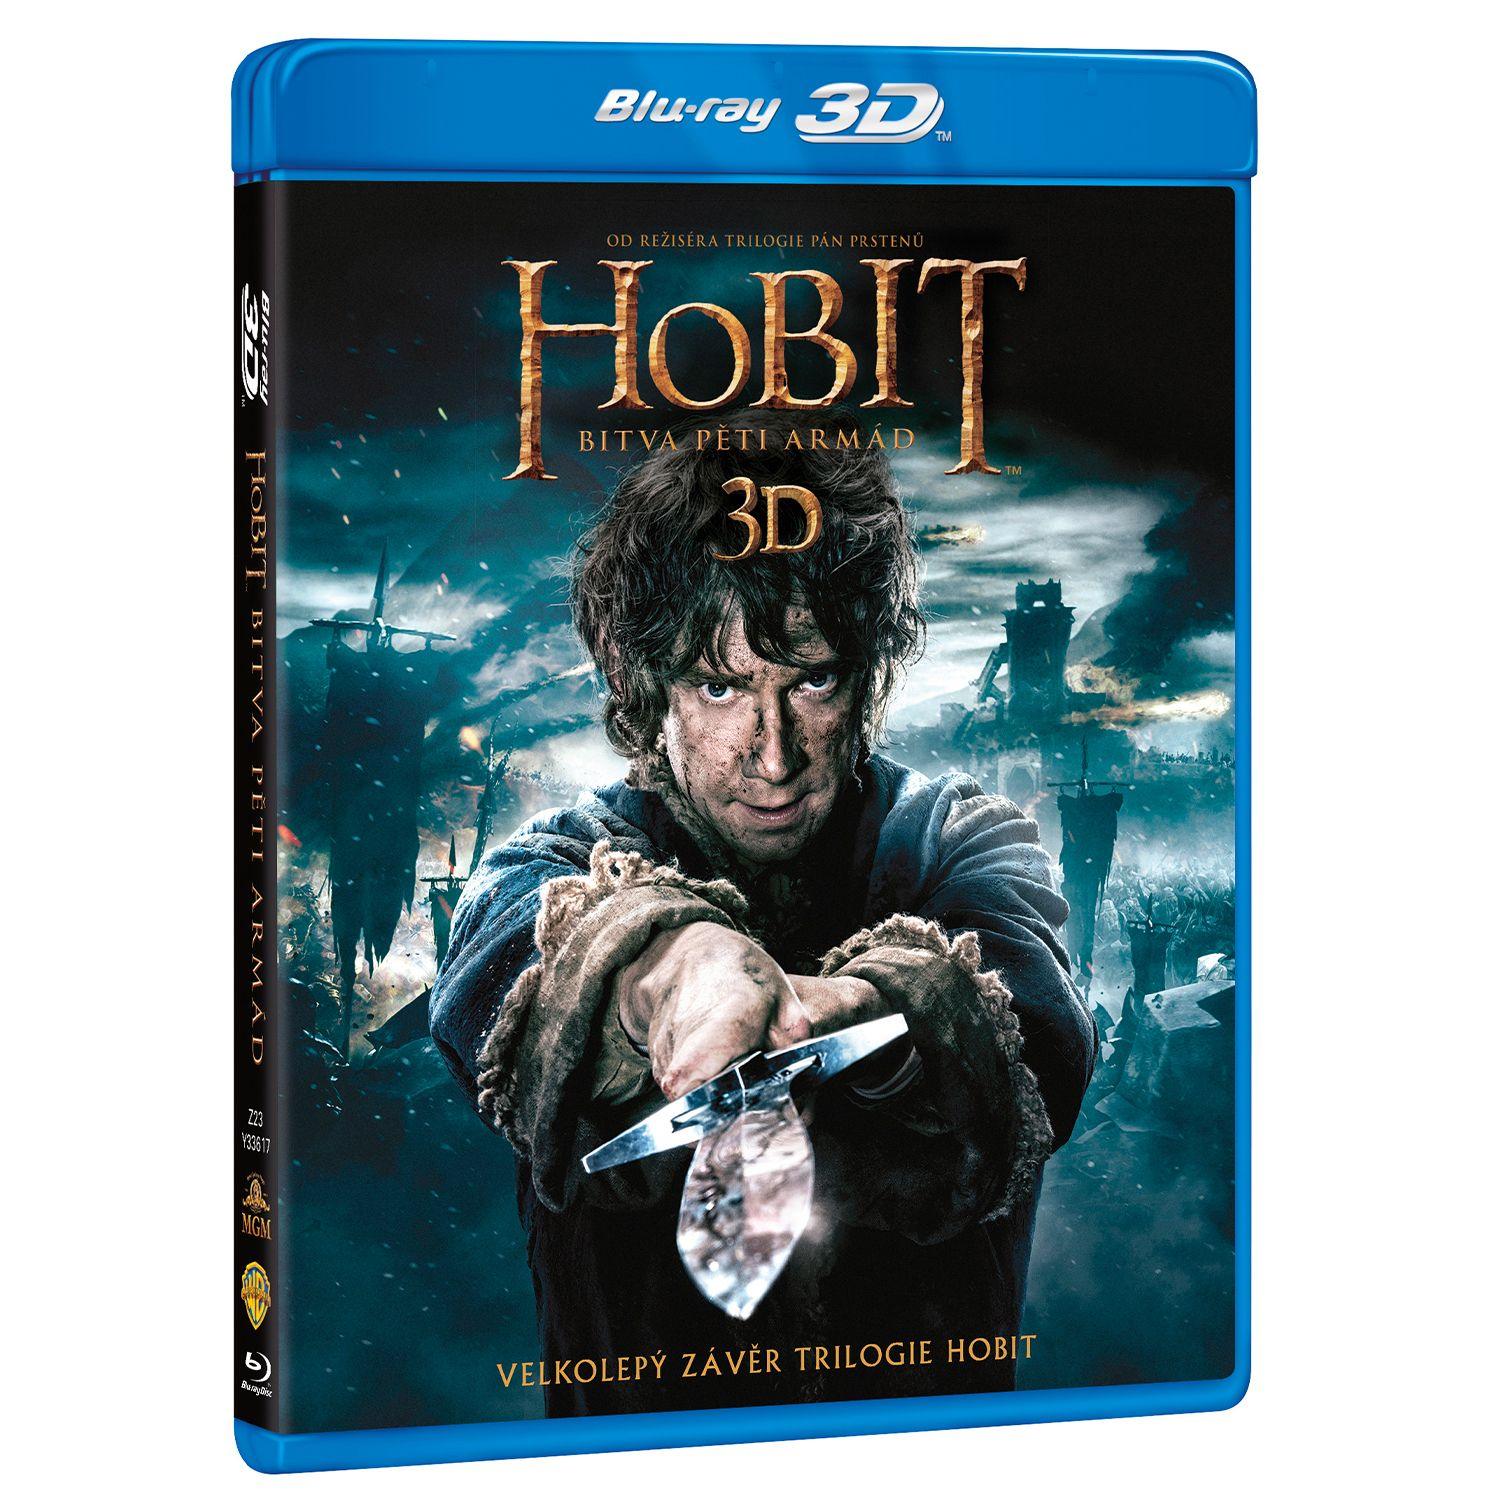 Хоббит: Битва пяти воинств 3D + 2D (4 Blu-ray)